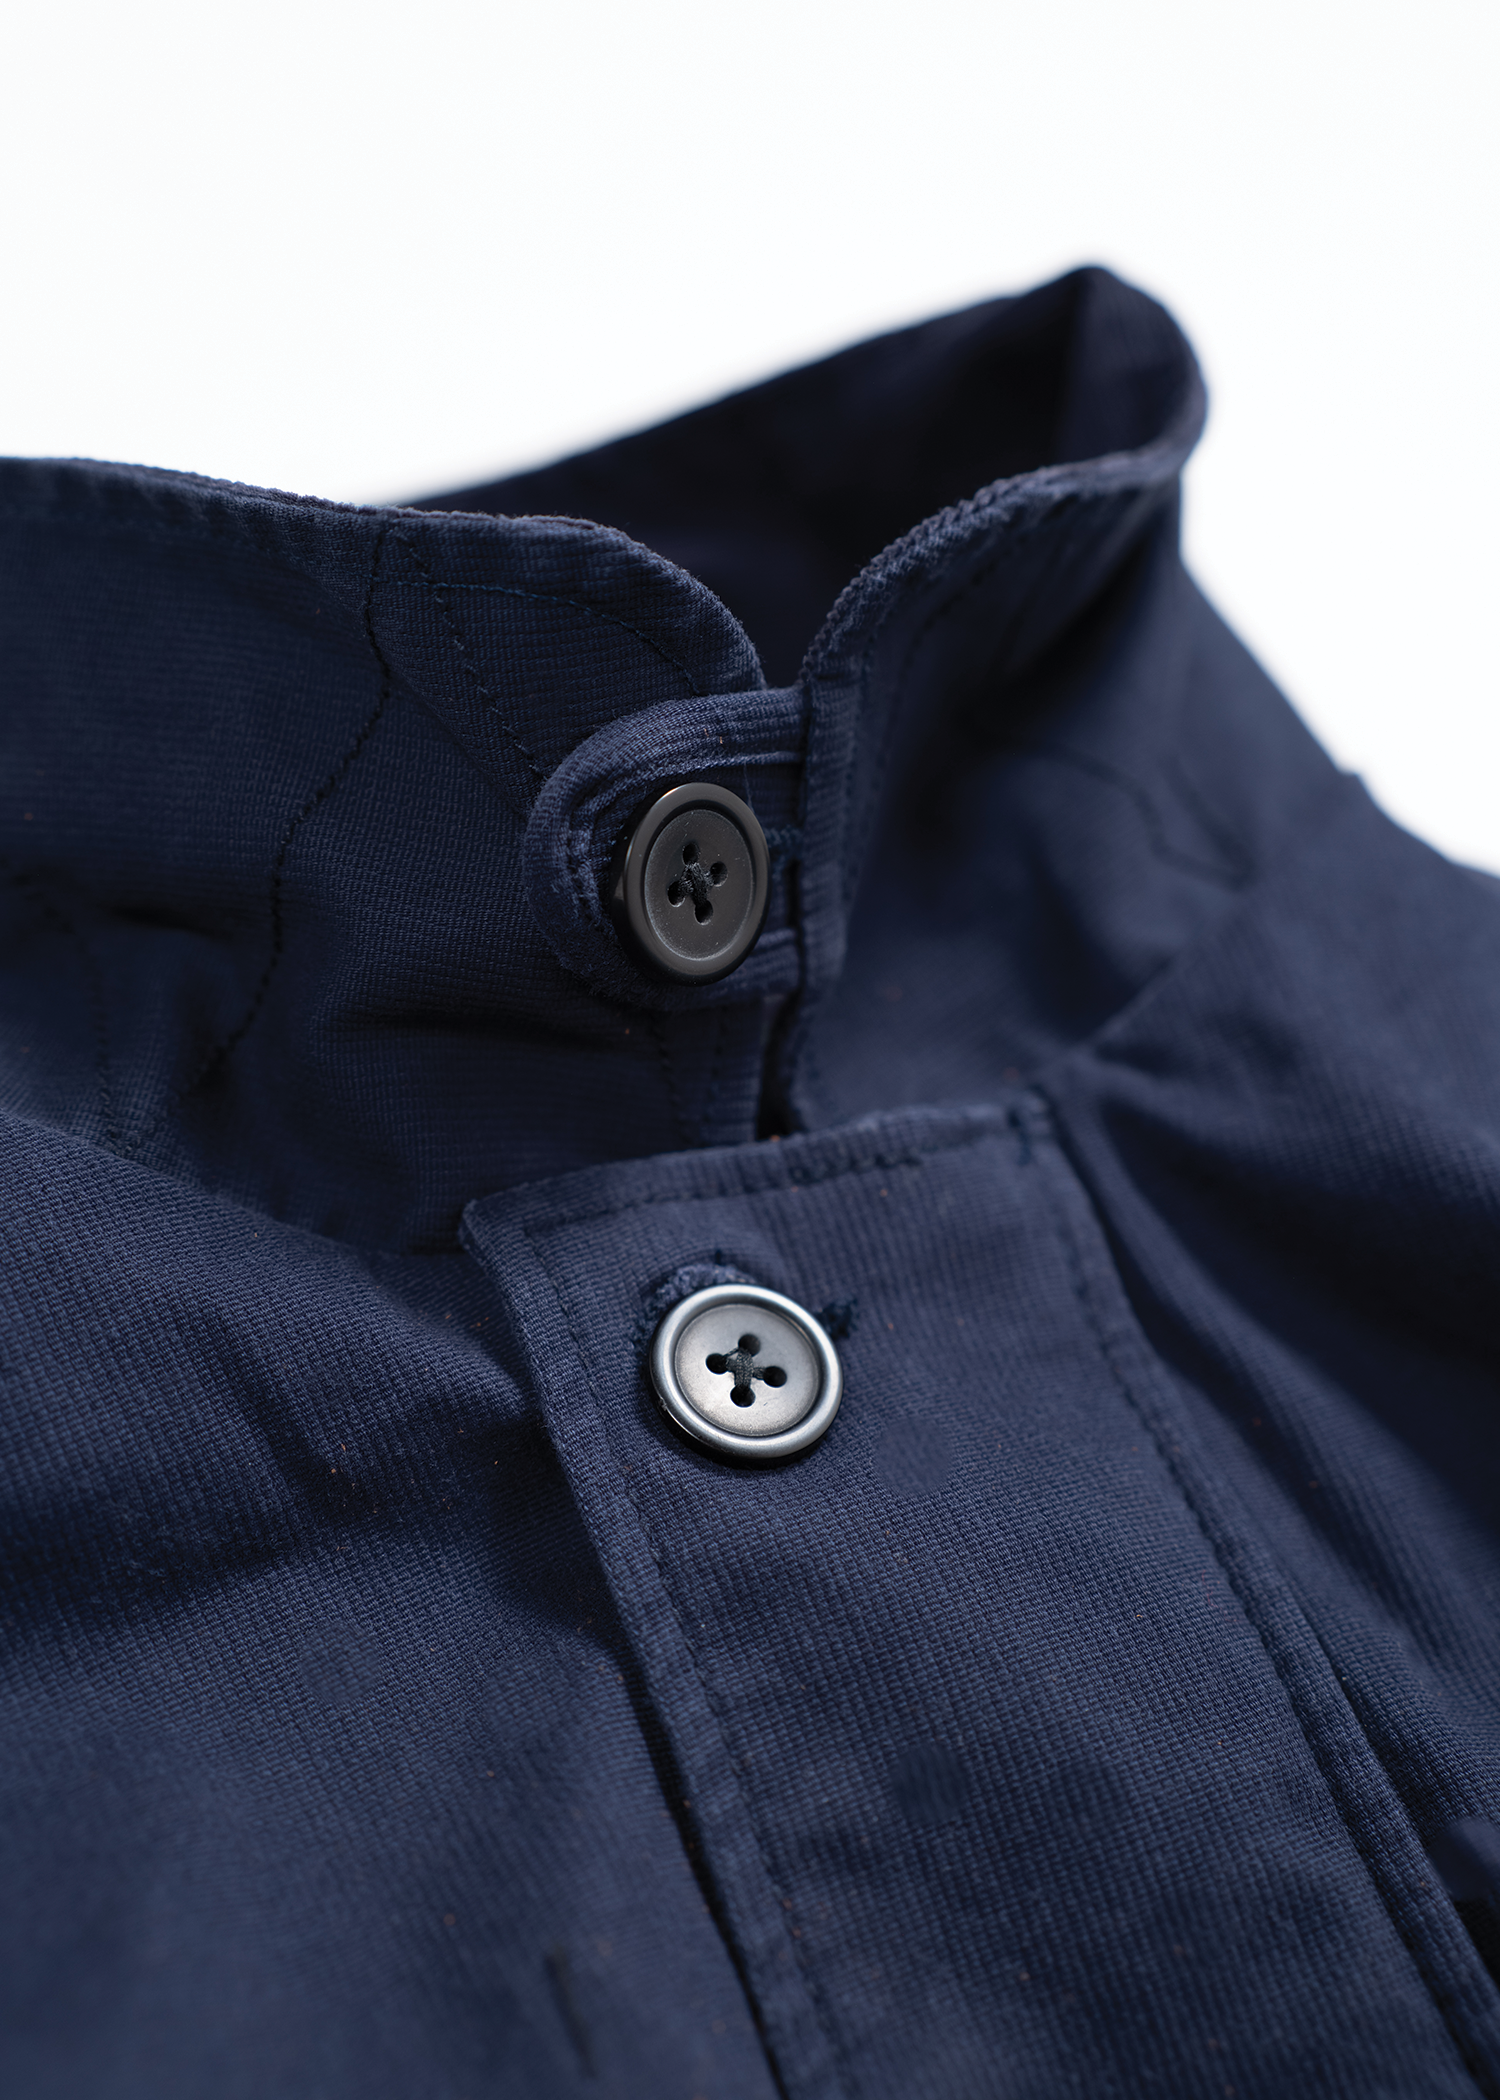 Davidson Jacket – Iron & Resin